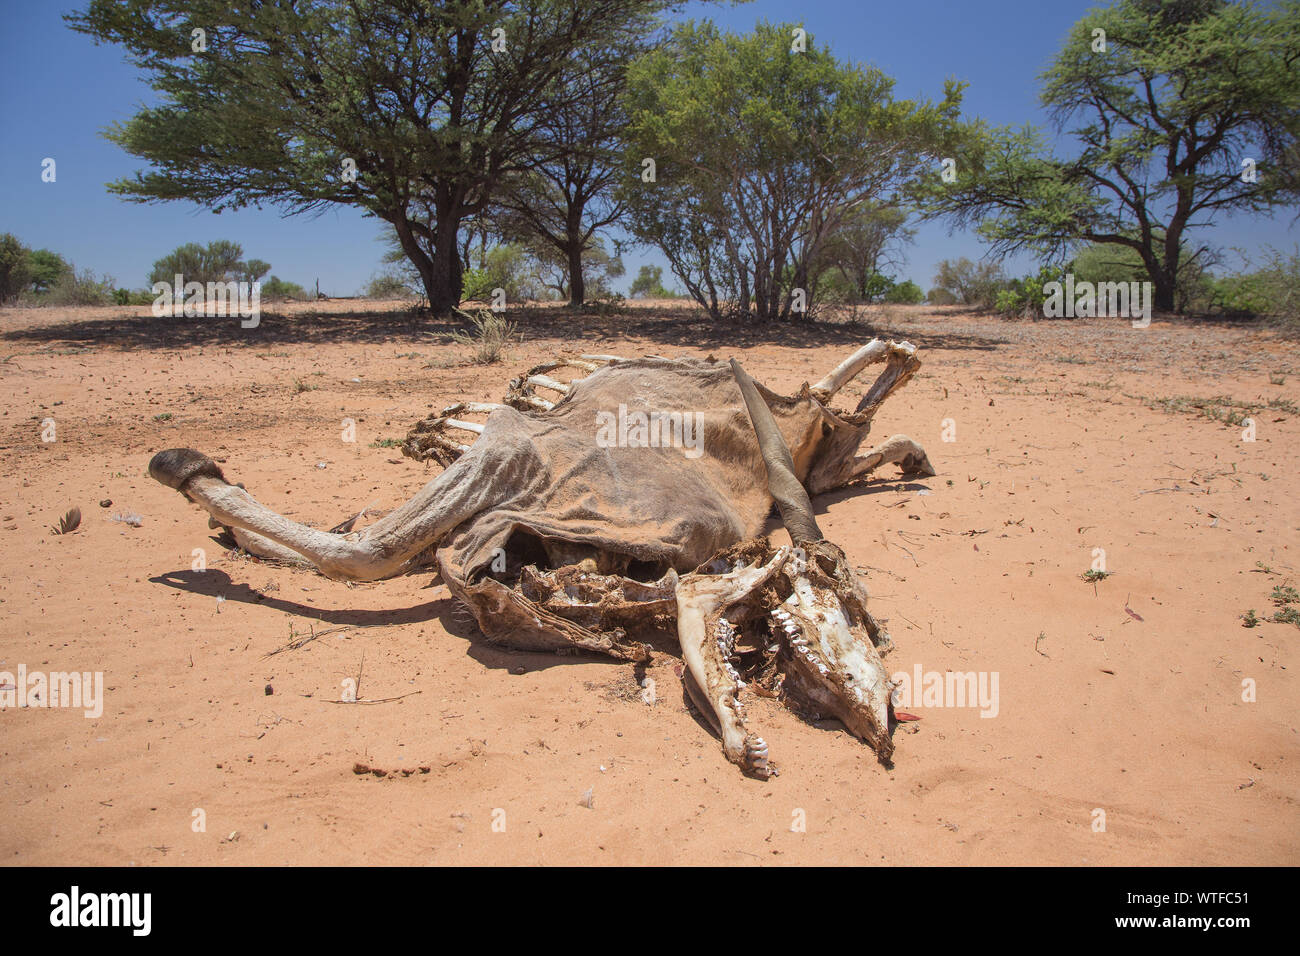 Les vestiges d'un des profils Éland du Cap (Taurotragus oryx) après qu'il a succombé à un manque de nourriture et d'eau. Banque D'Images